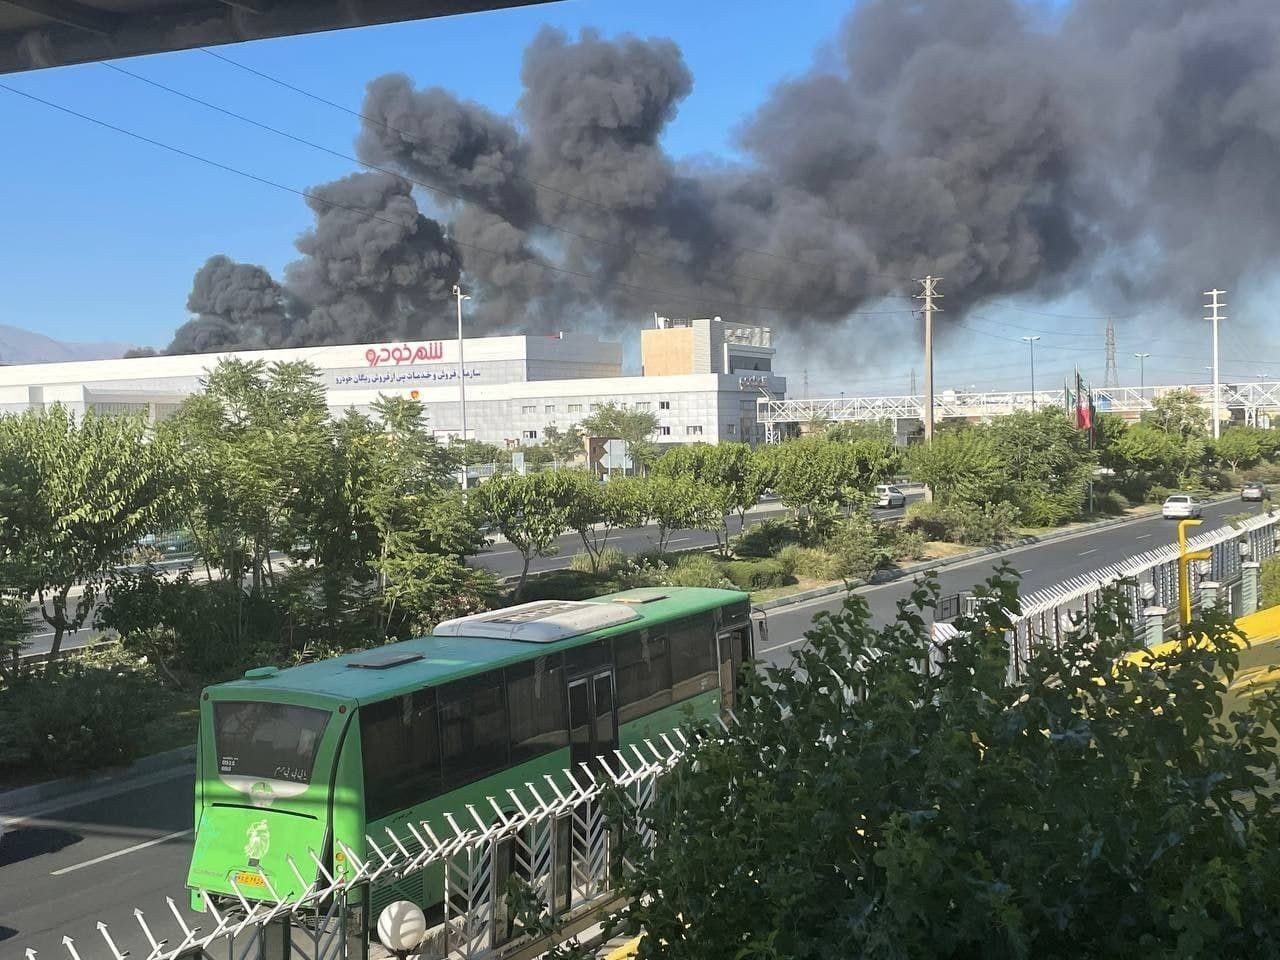 الحريق الذي اندلع في شركة "بهنوش" للمواد الغذائية غربي العاصمة طهران يوم الاثنين